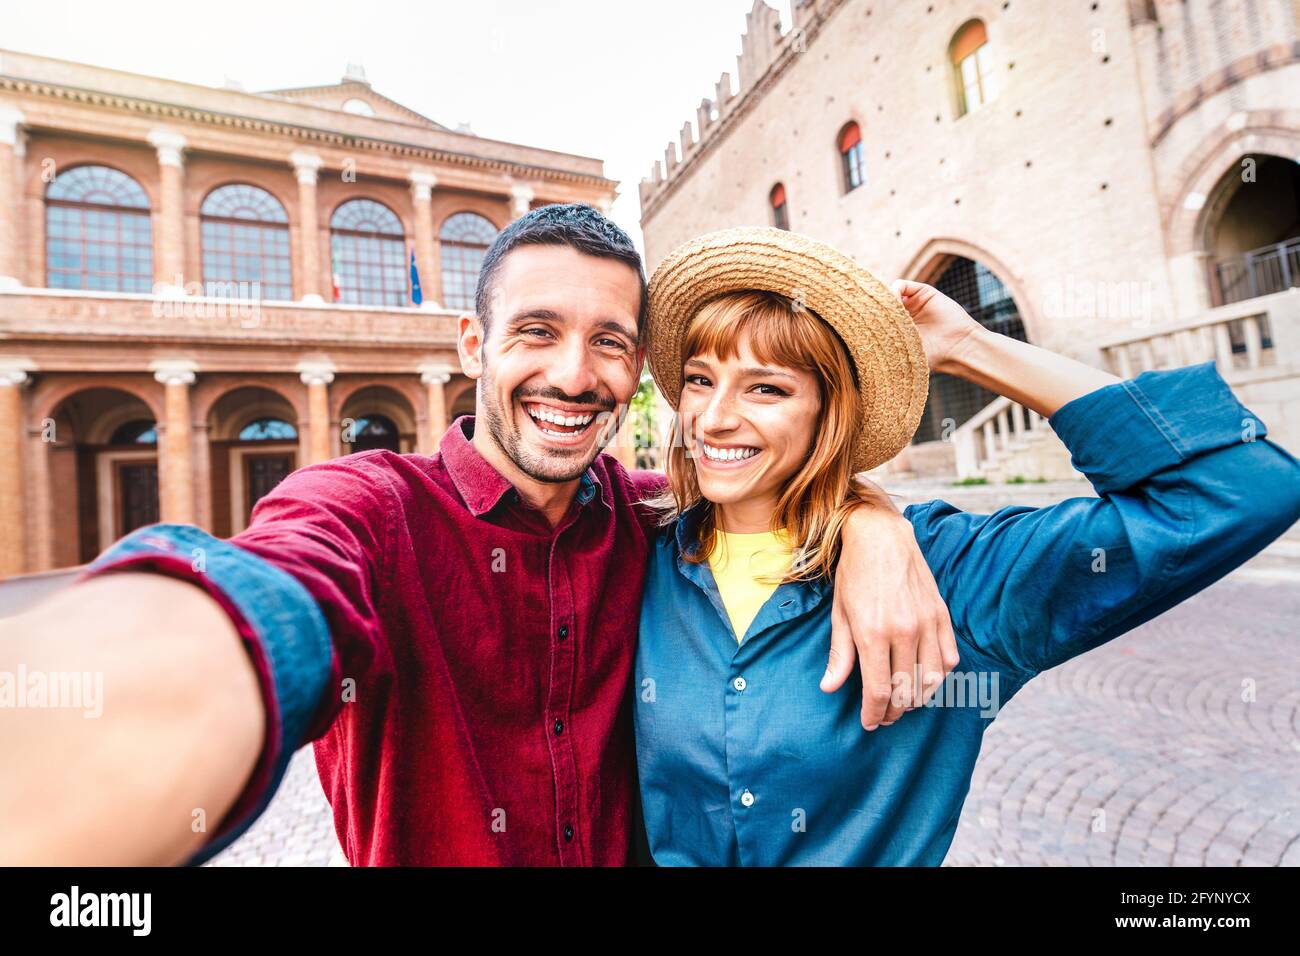 Giovane fidanzato e fidanzata innamorati di divertirsi prendendo selfie al tour della città vecchia - Wanderlust stile di vita concetto di viaggio con coppia turistica Foto Stock